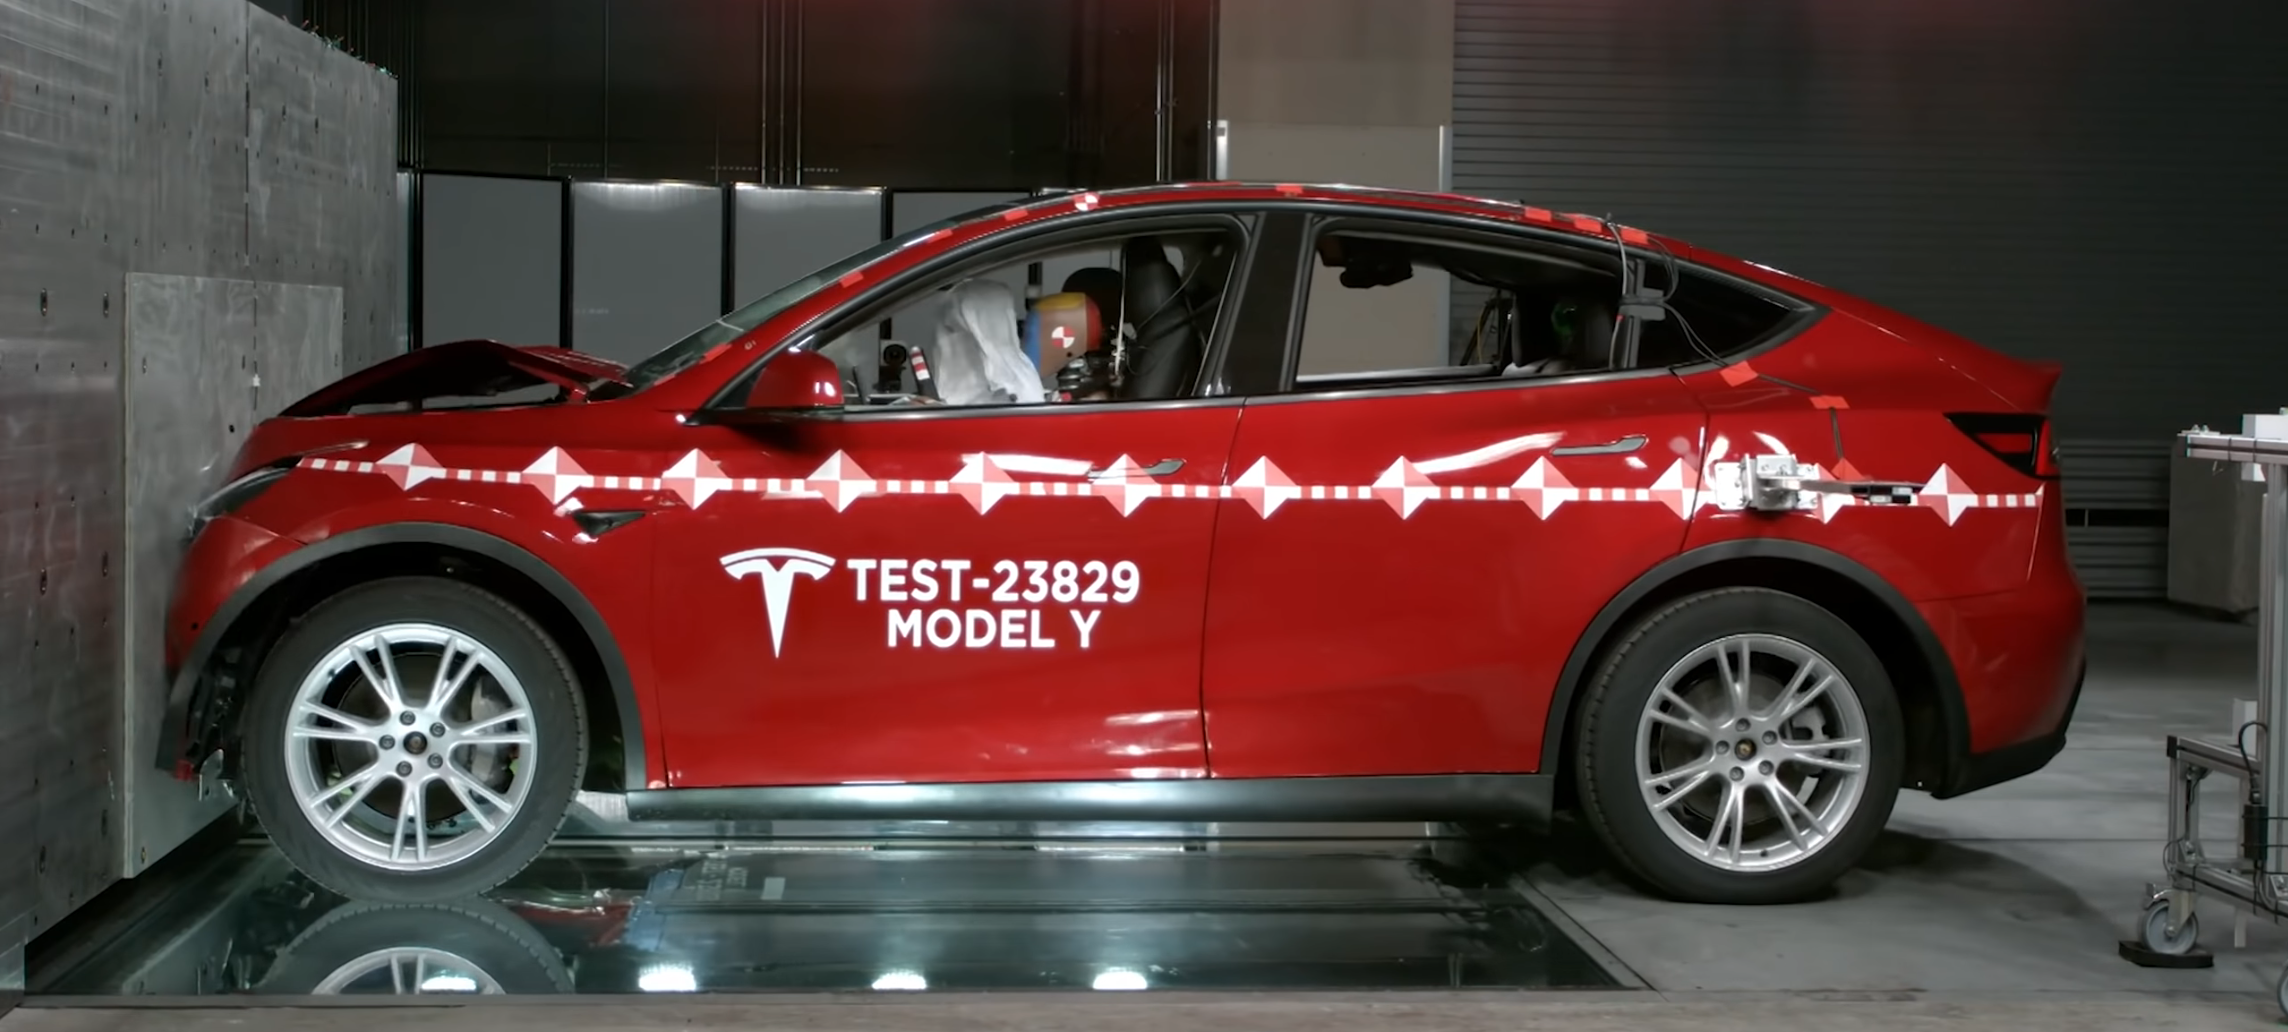 Tesla crash testing